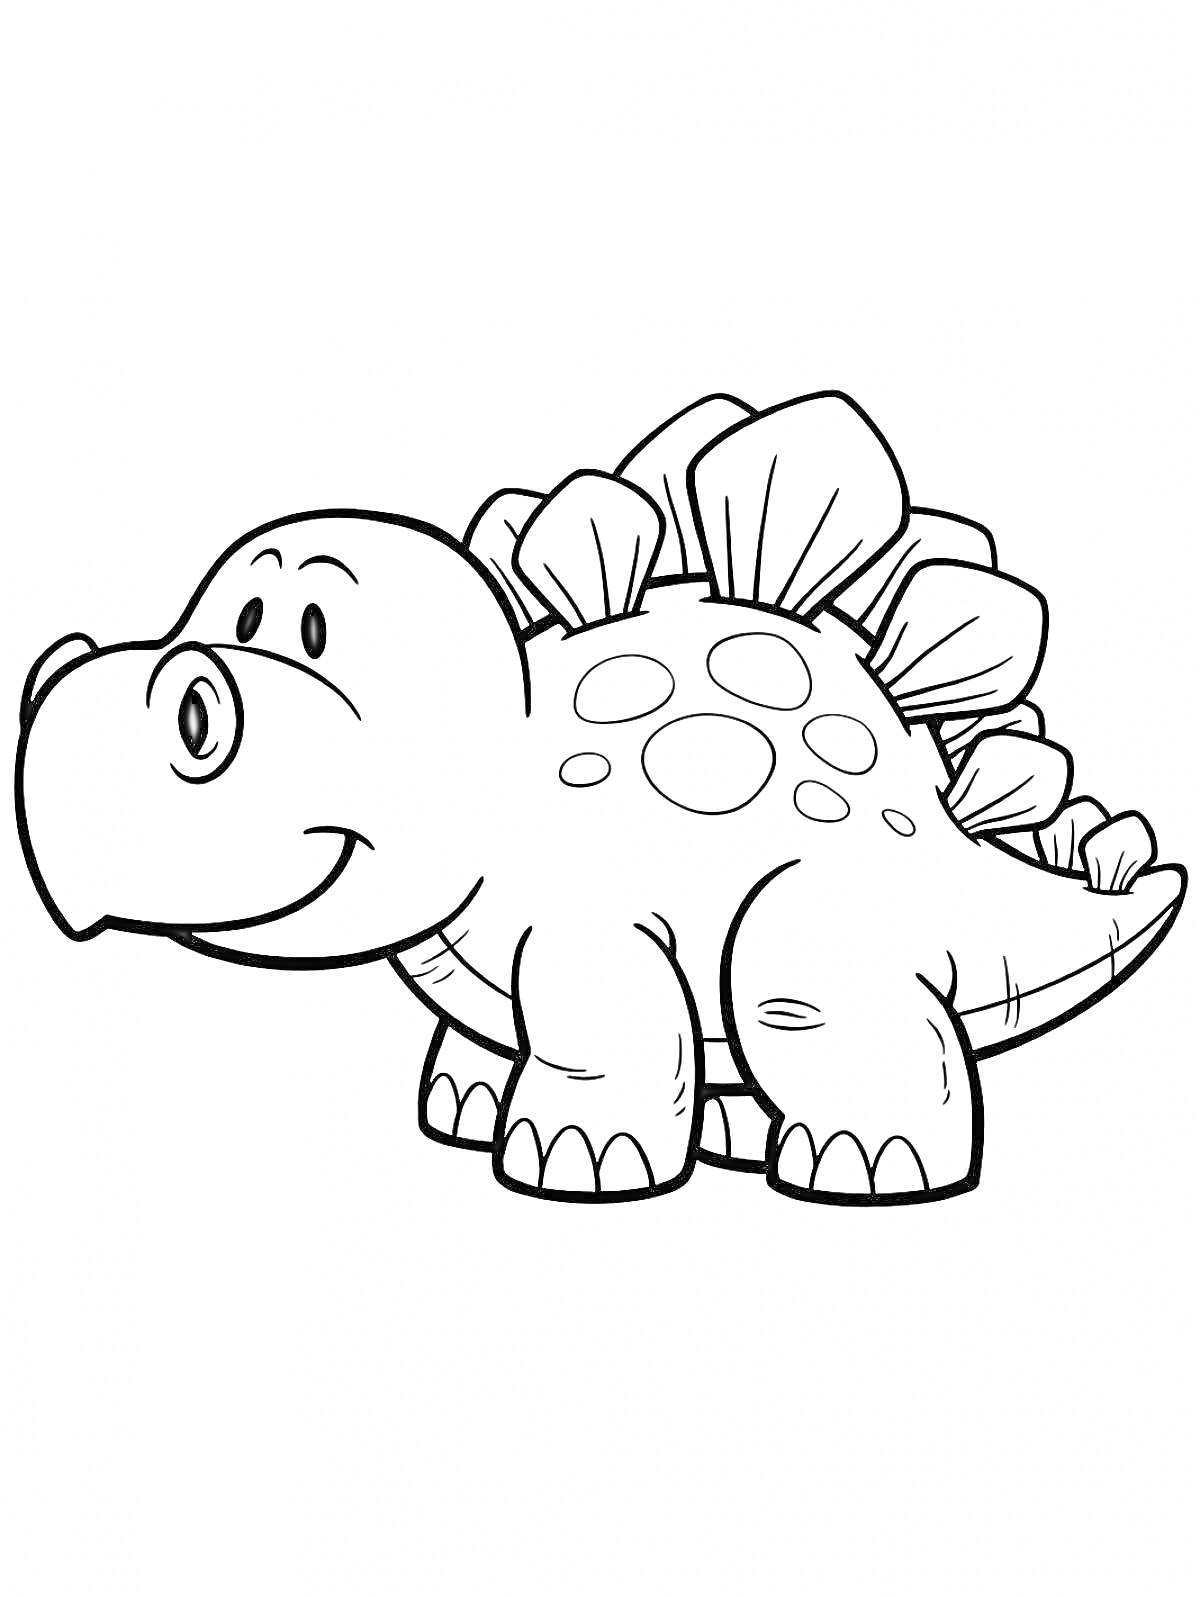 Динозавр с пластинами на спине и пятнами, улыбающийся